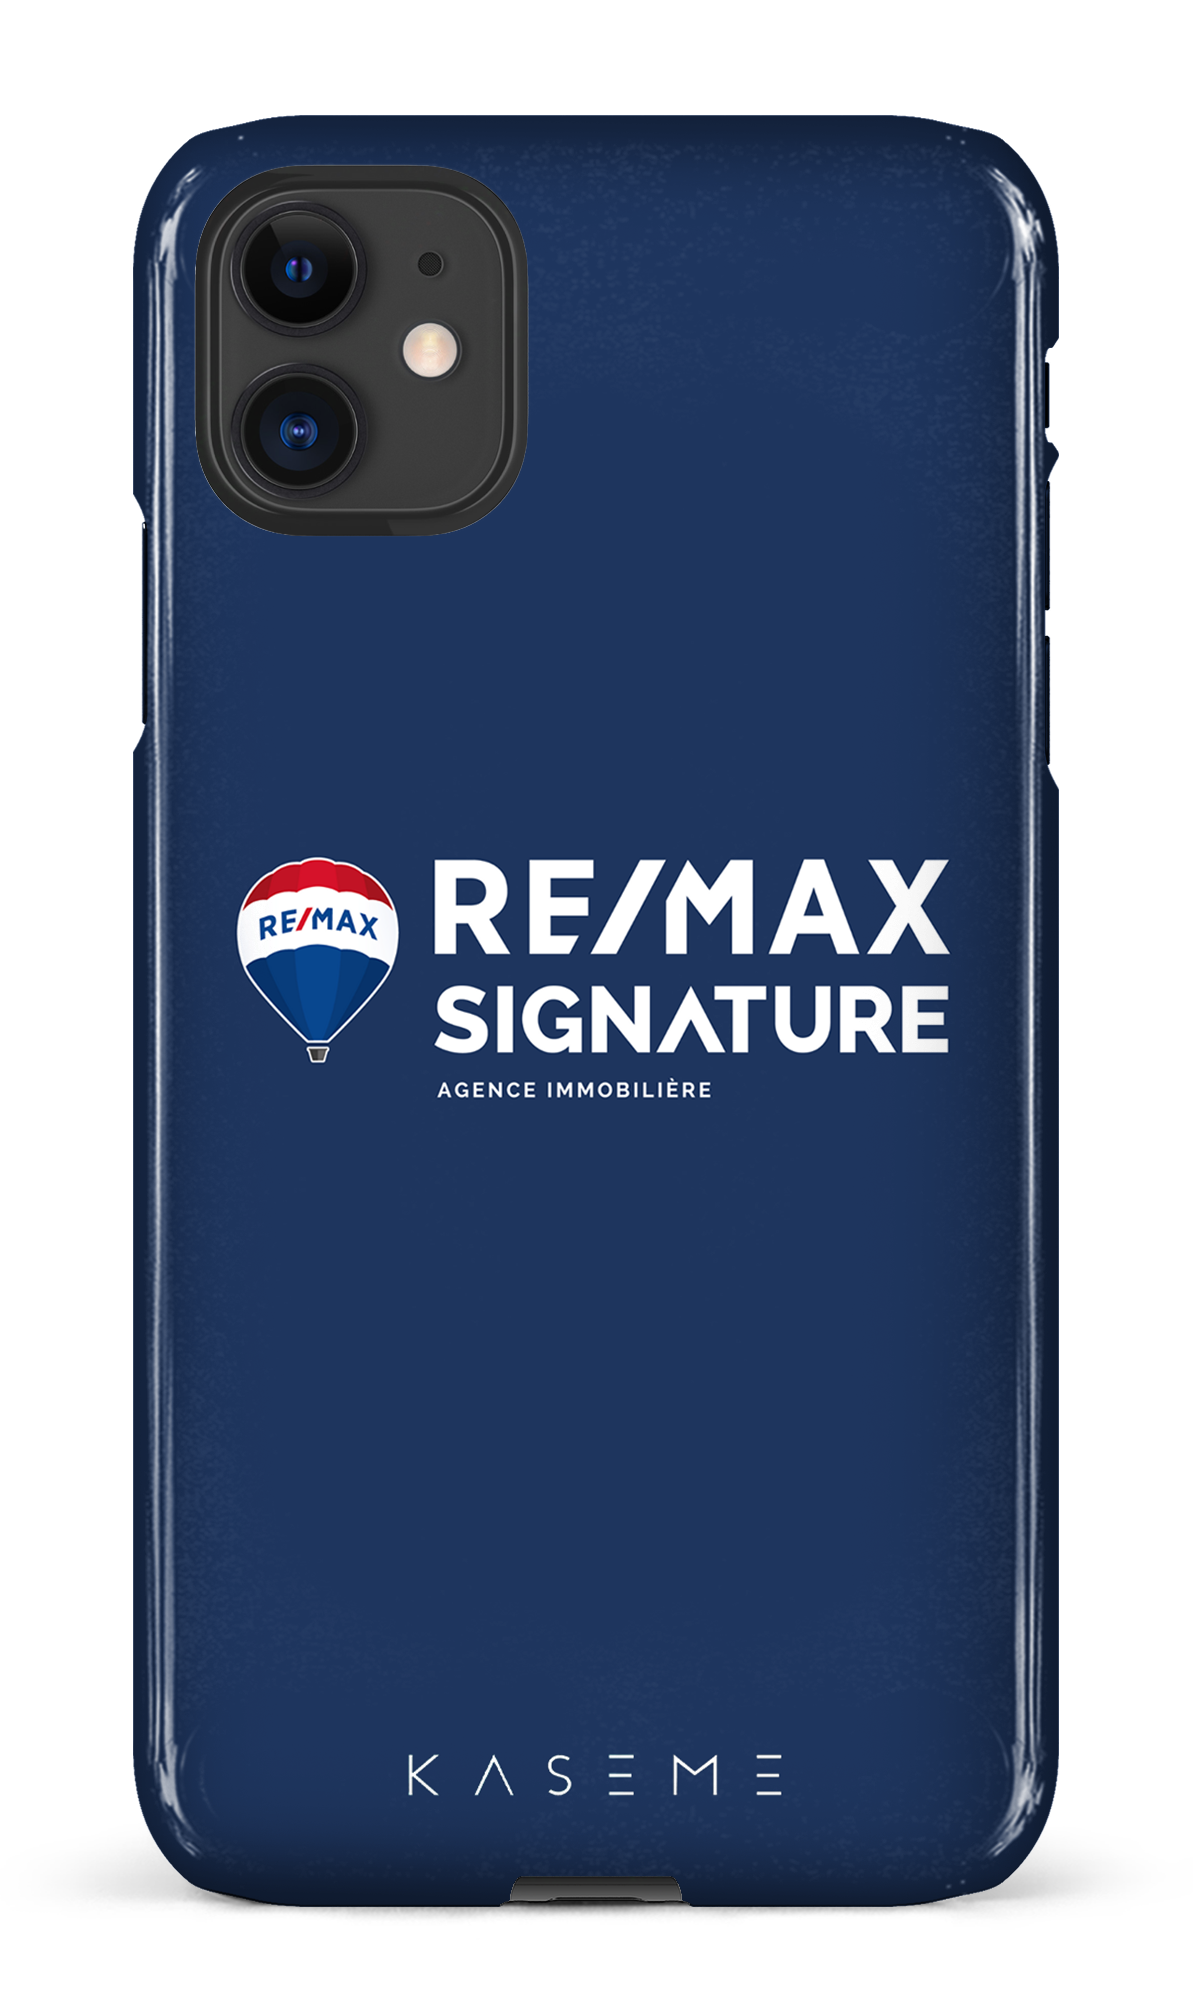 Remax Signature Bleu - iPhone 11